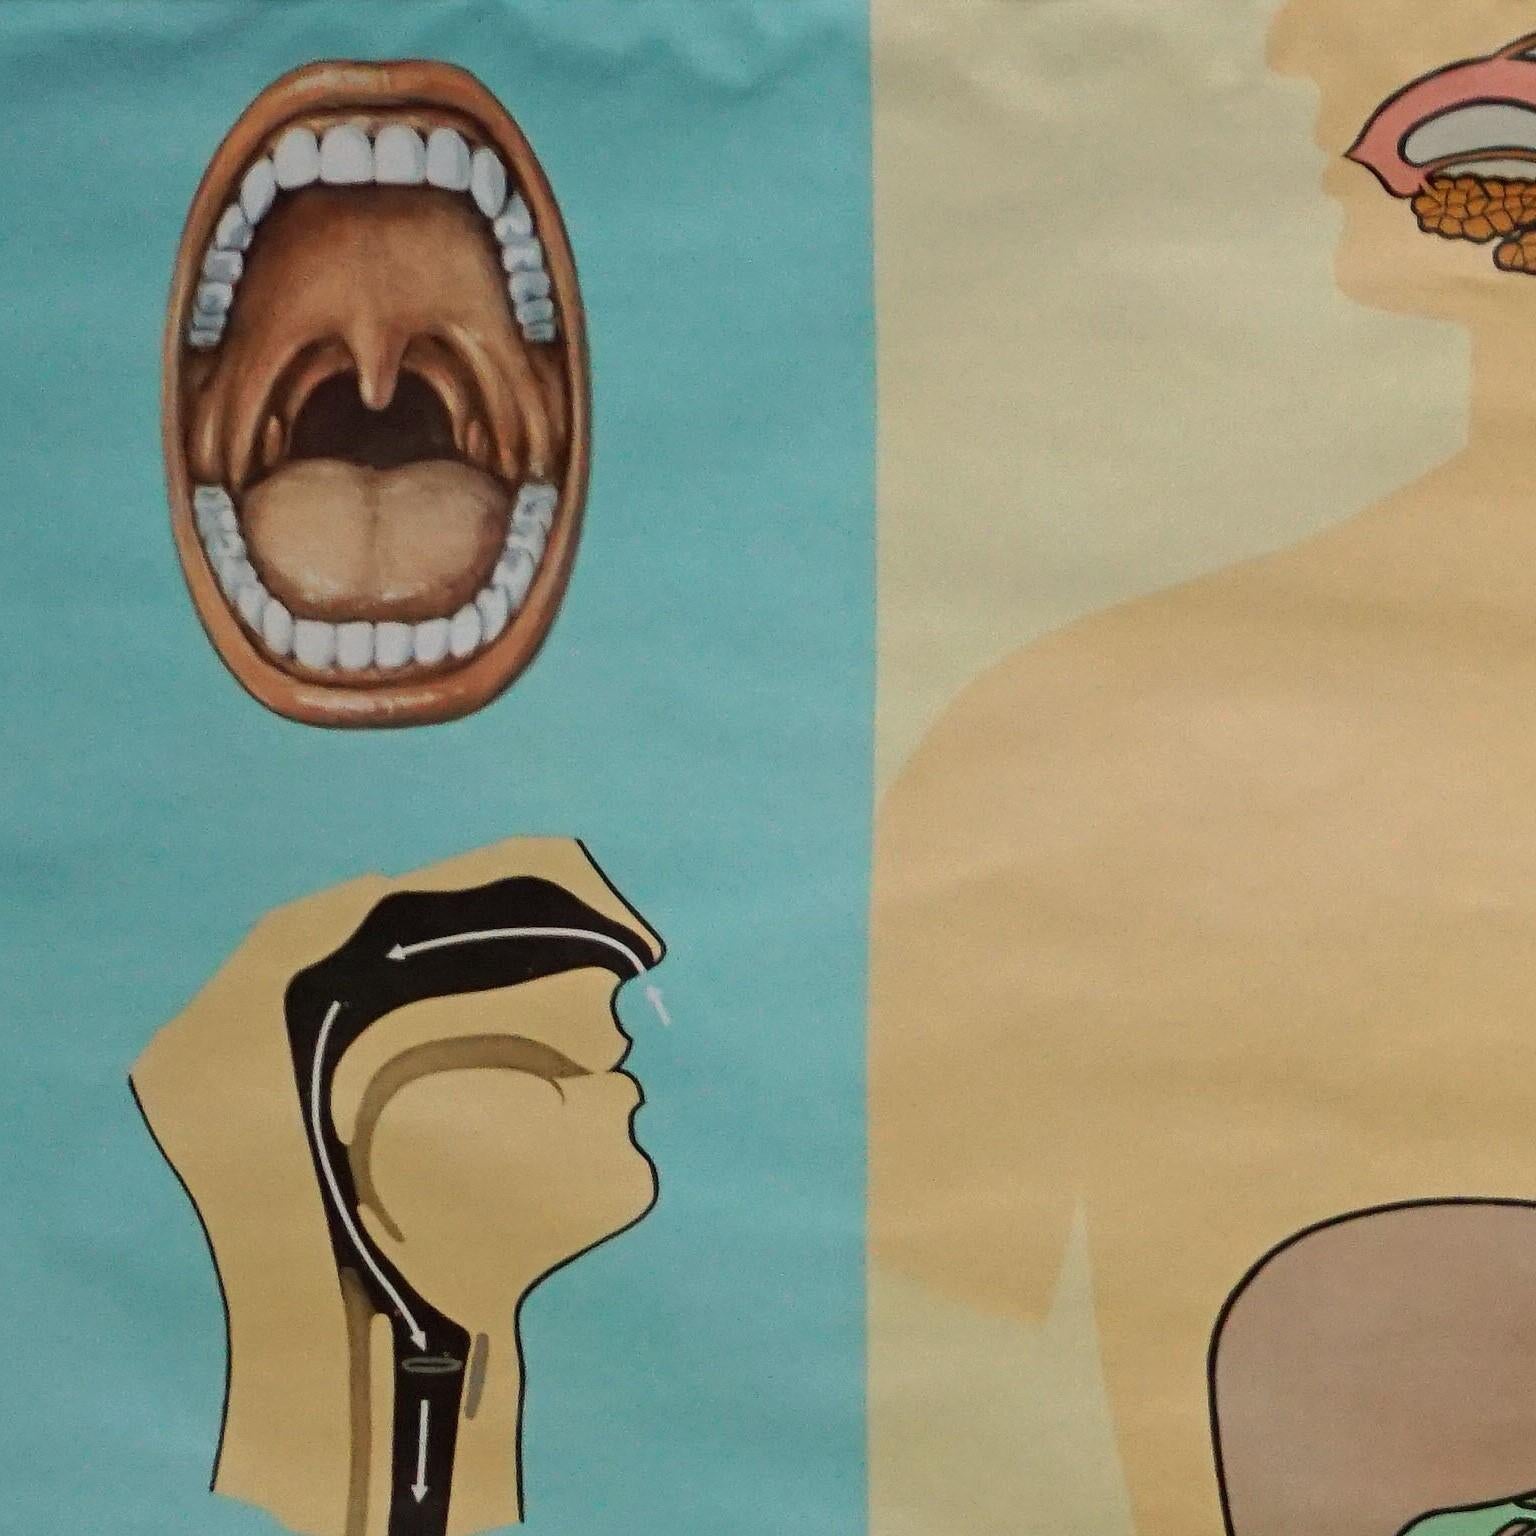 Ein altes medizinisches Poster drucken rollbare Wandkarte zeigt den Verdauungstrakt der Nahrung - Teil 2 der Serie menschlichen Körper von Hagemann Düsseldorf. Bunter Druck auf leinwandverstärktem Papier.
Abmessungen:
Breite 165 cm (64,96 Zoll)
Höhe